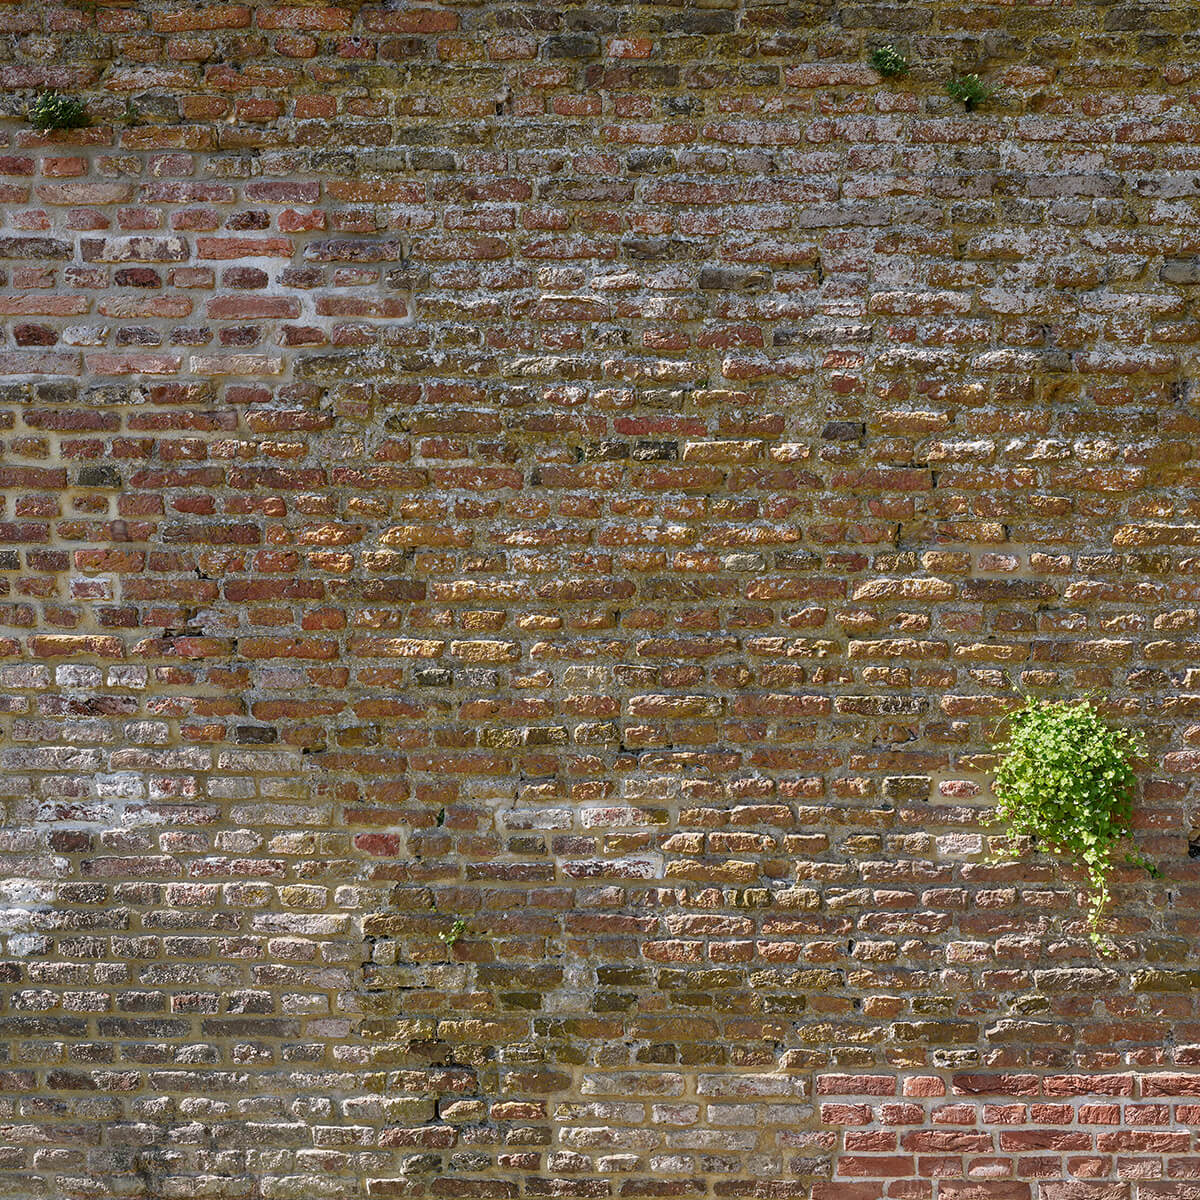 Alte steinerne Stadtmauer mit Pflanzen